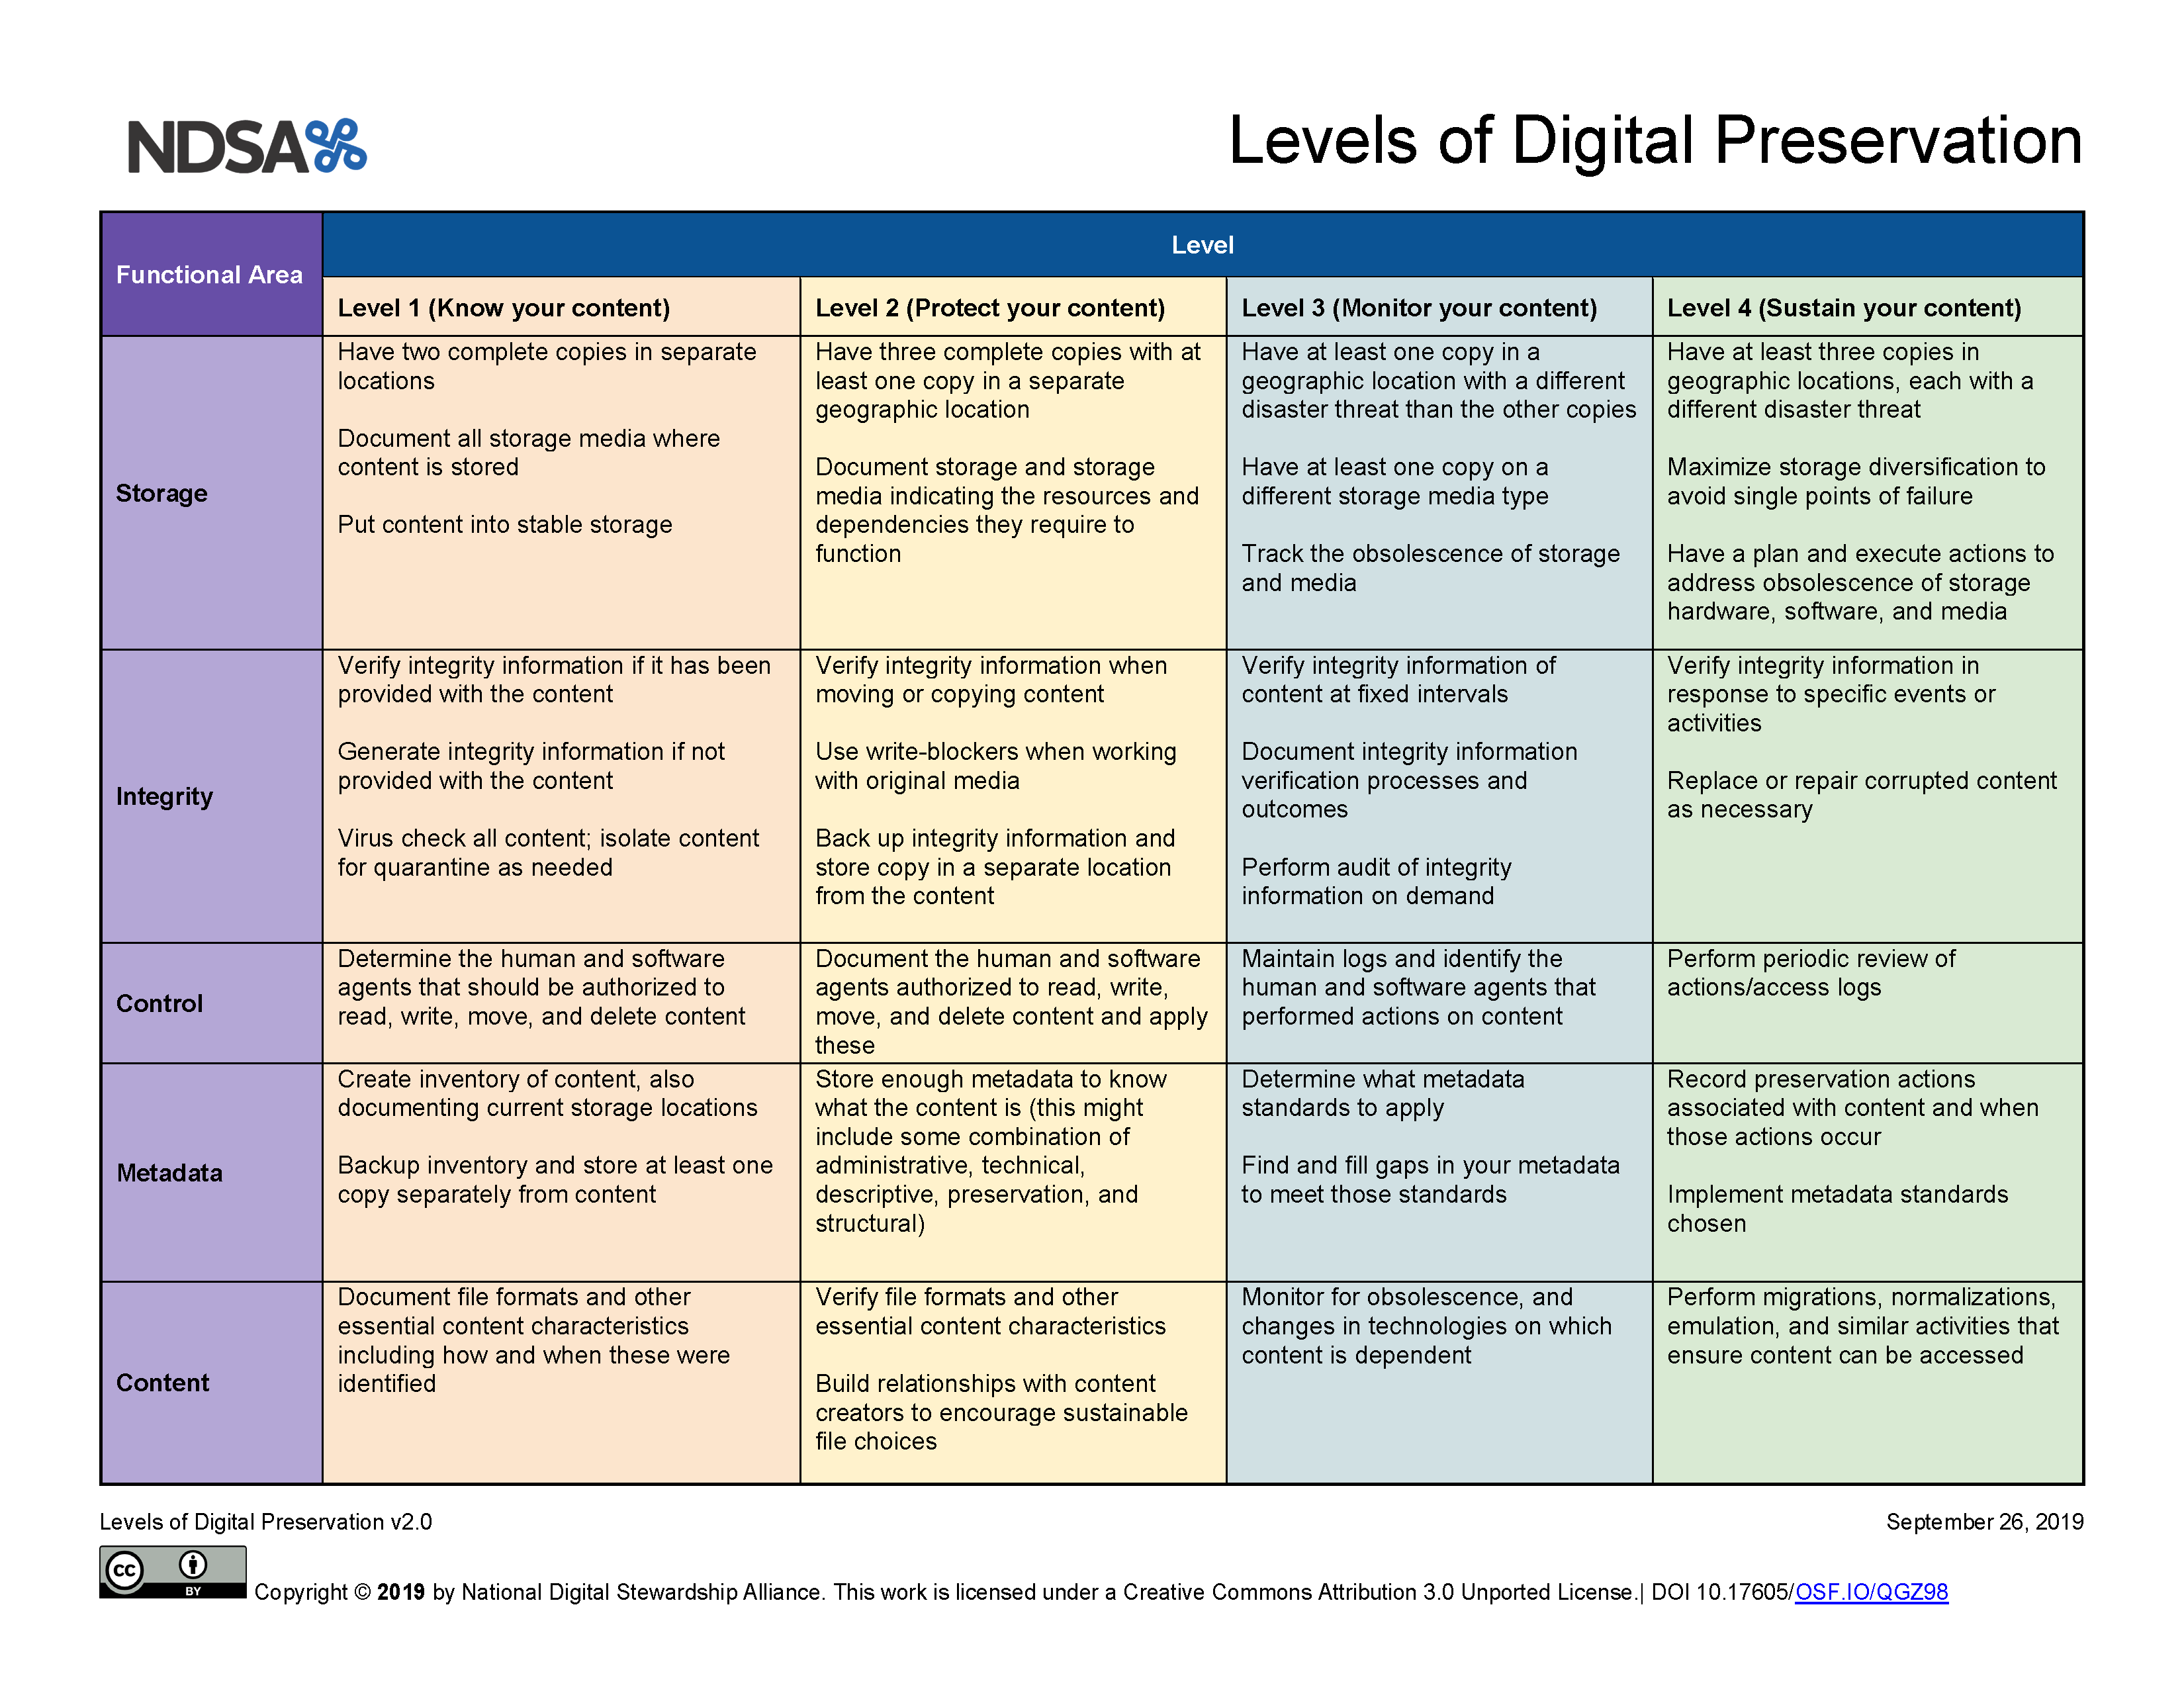 Levels of Digital Preservation v2 Matrix Carol Kussmann